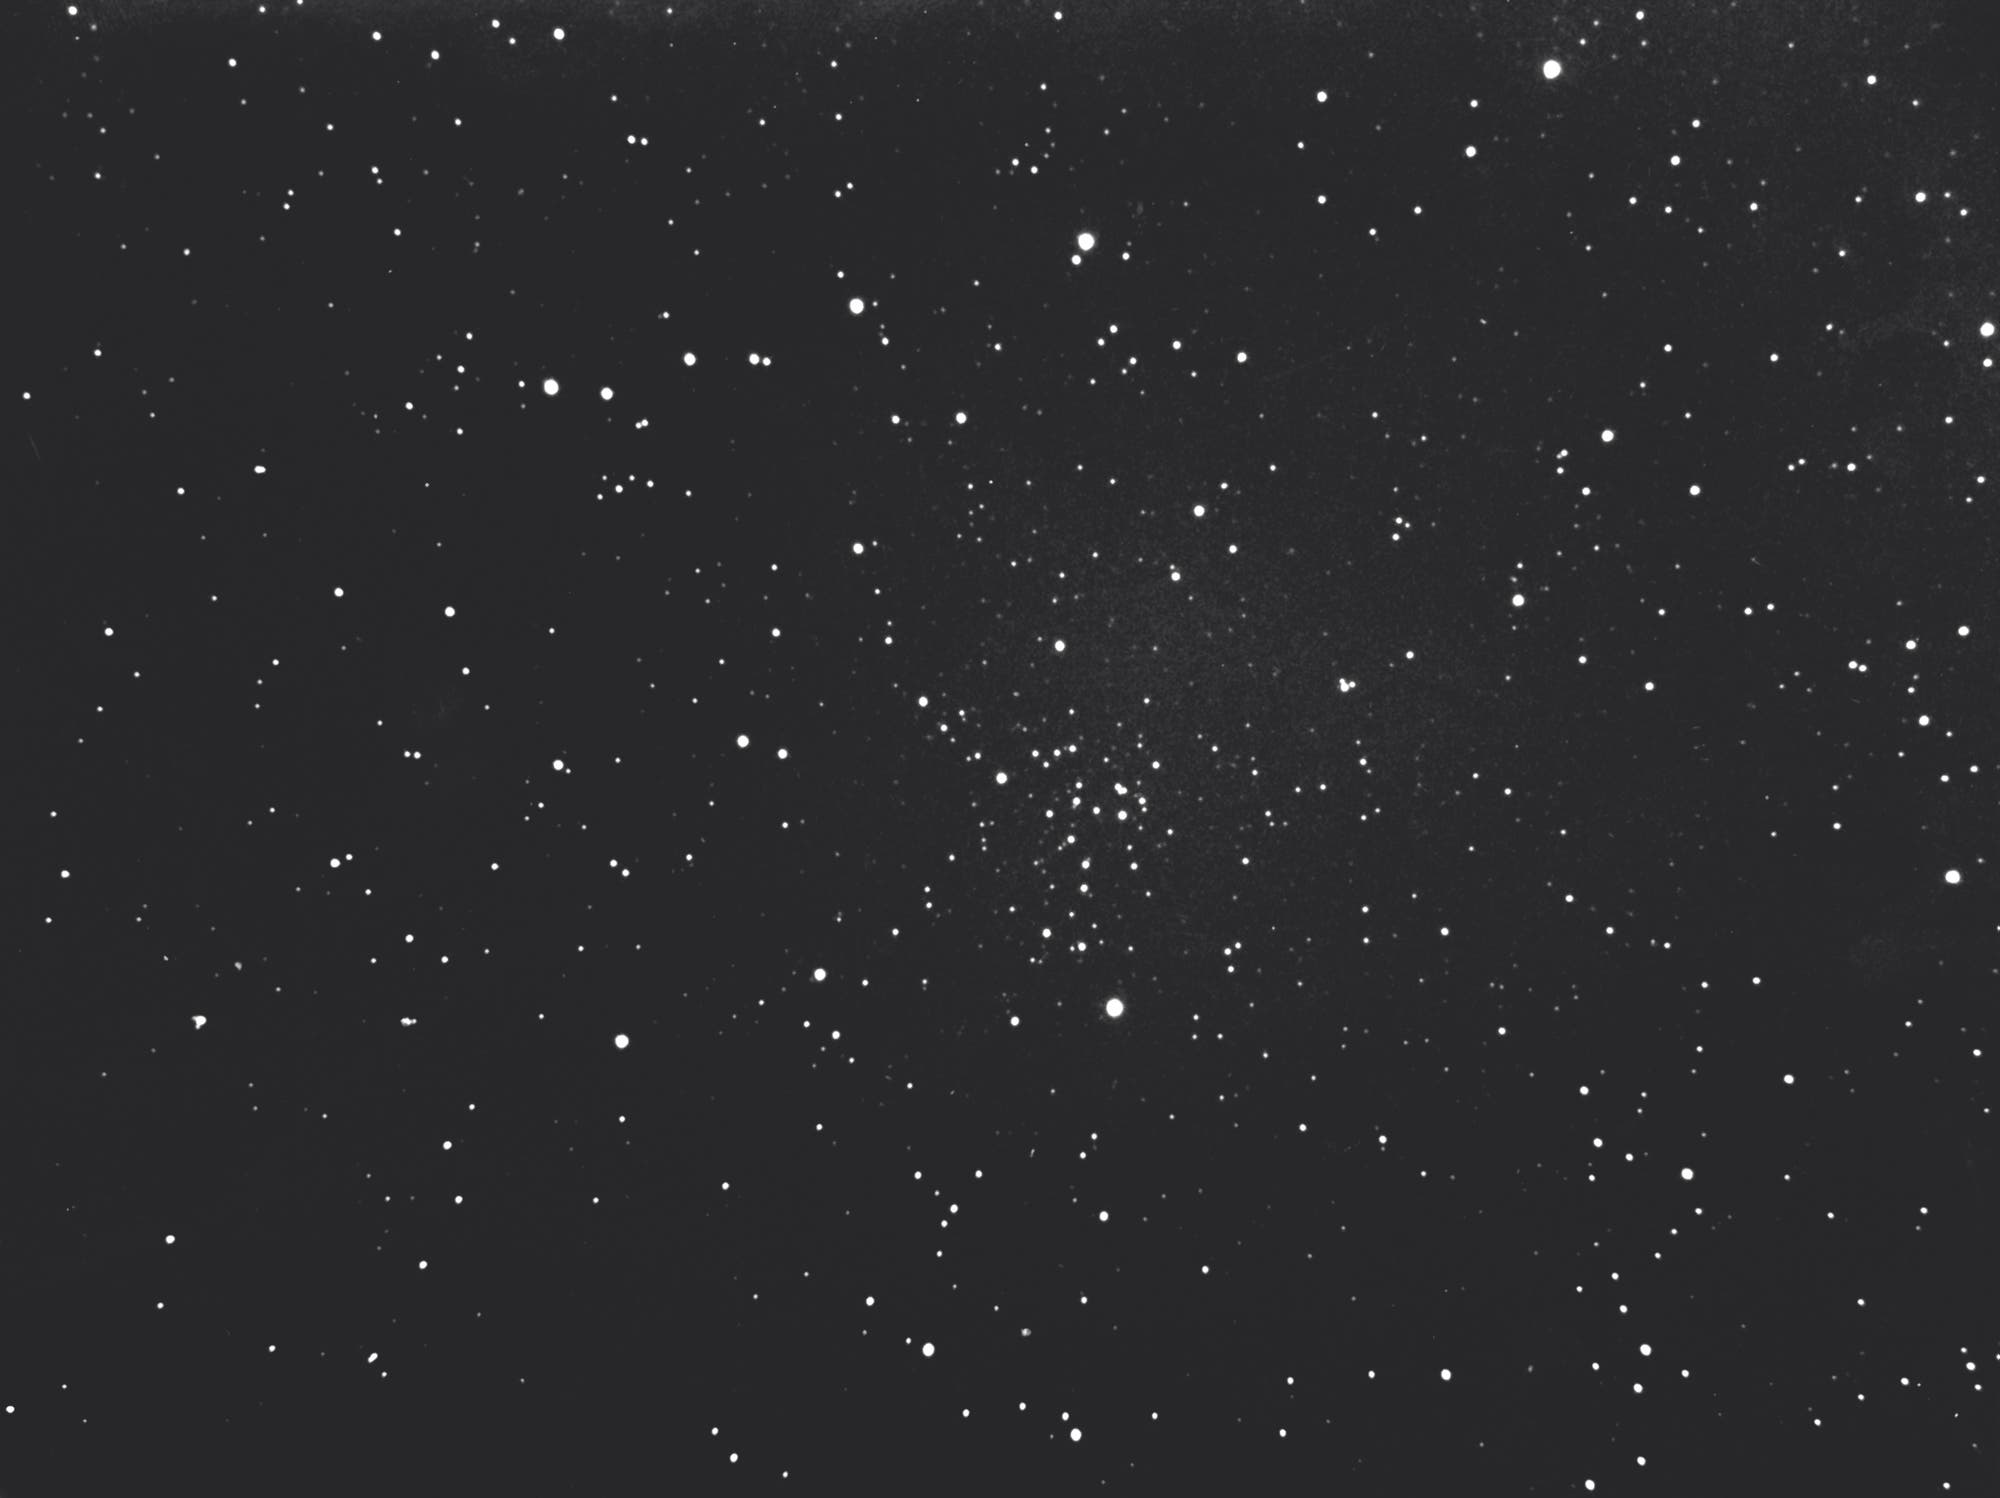 Der offene Sternhaufen NGC 1883